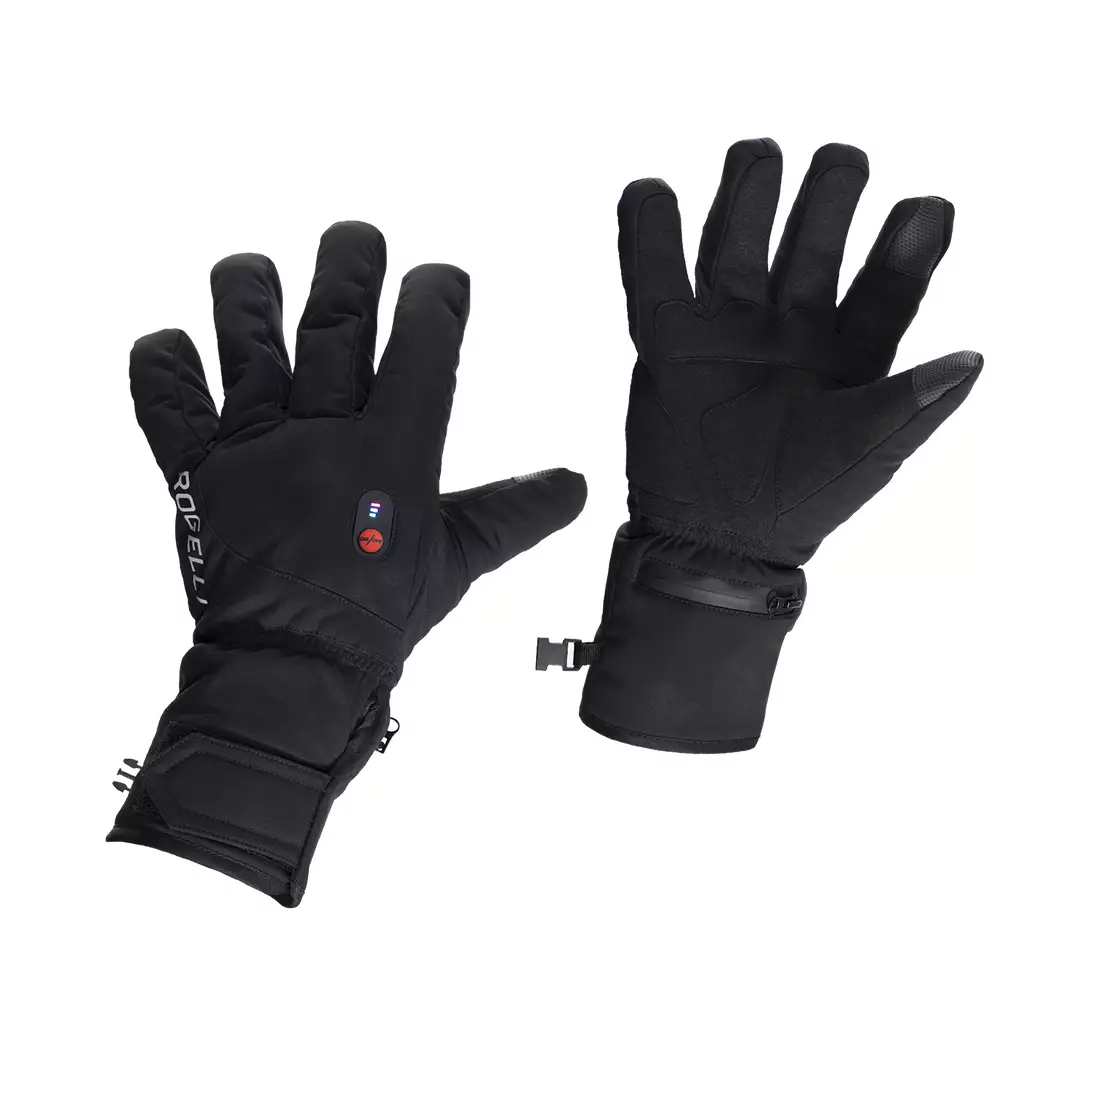 ROGELLI mănuși de iarnă cu sistem de încălzire pentru bărbați HEATED negru